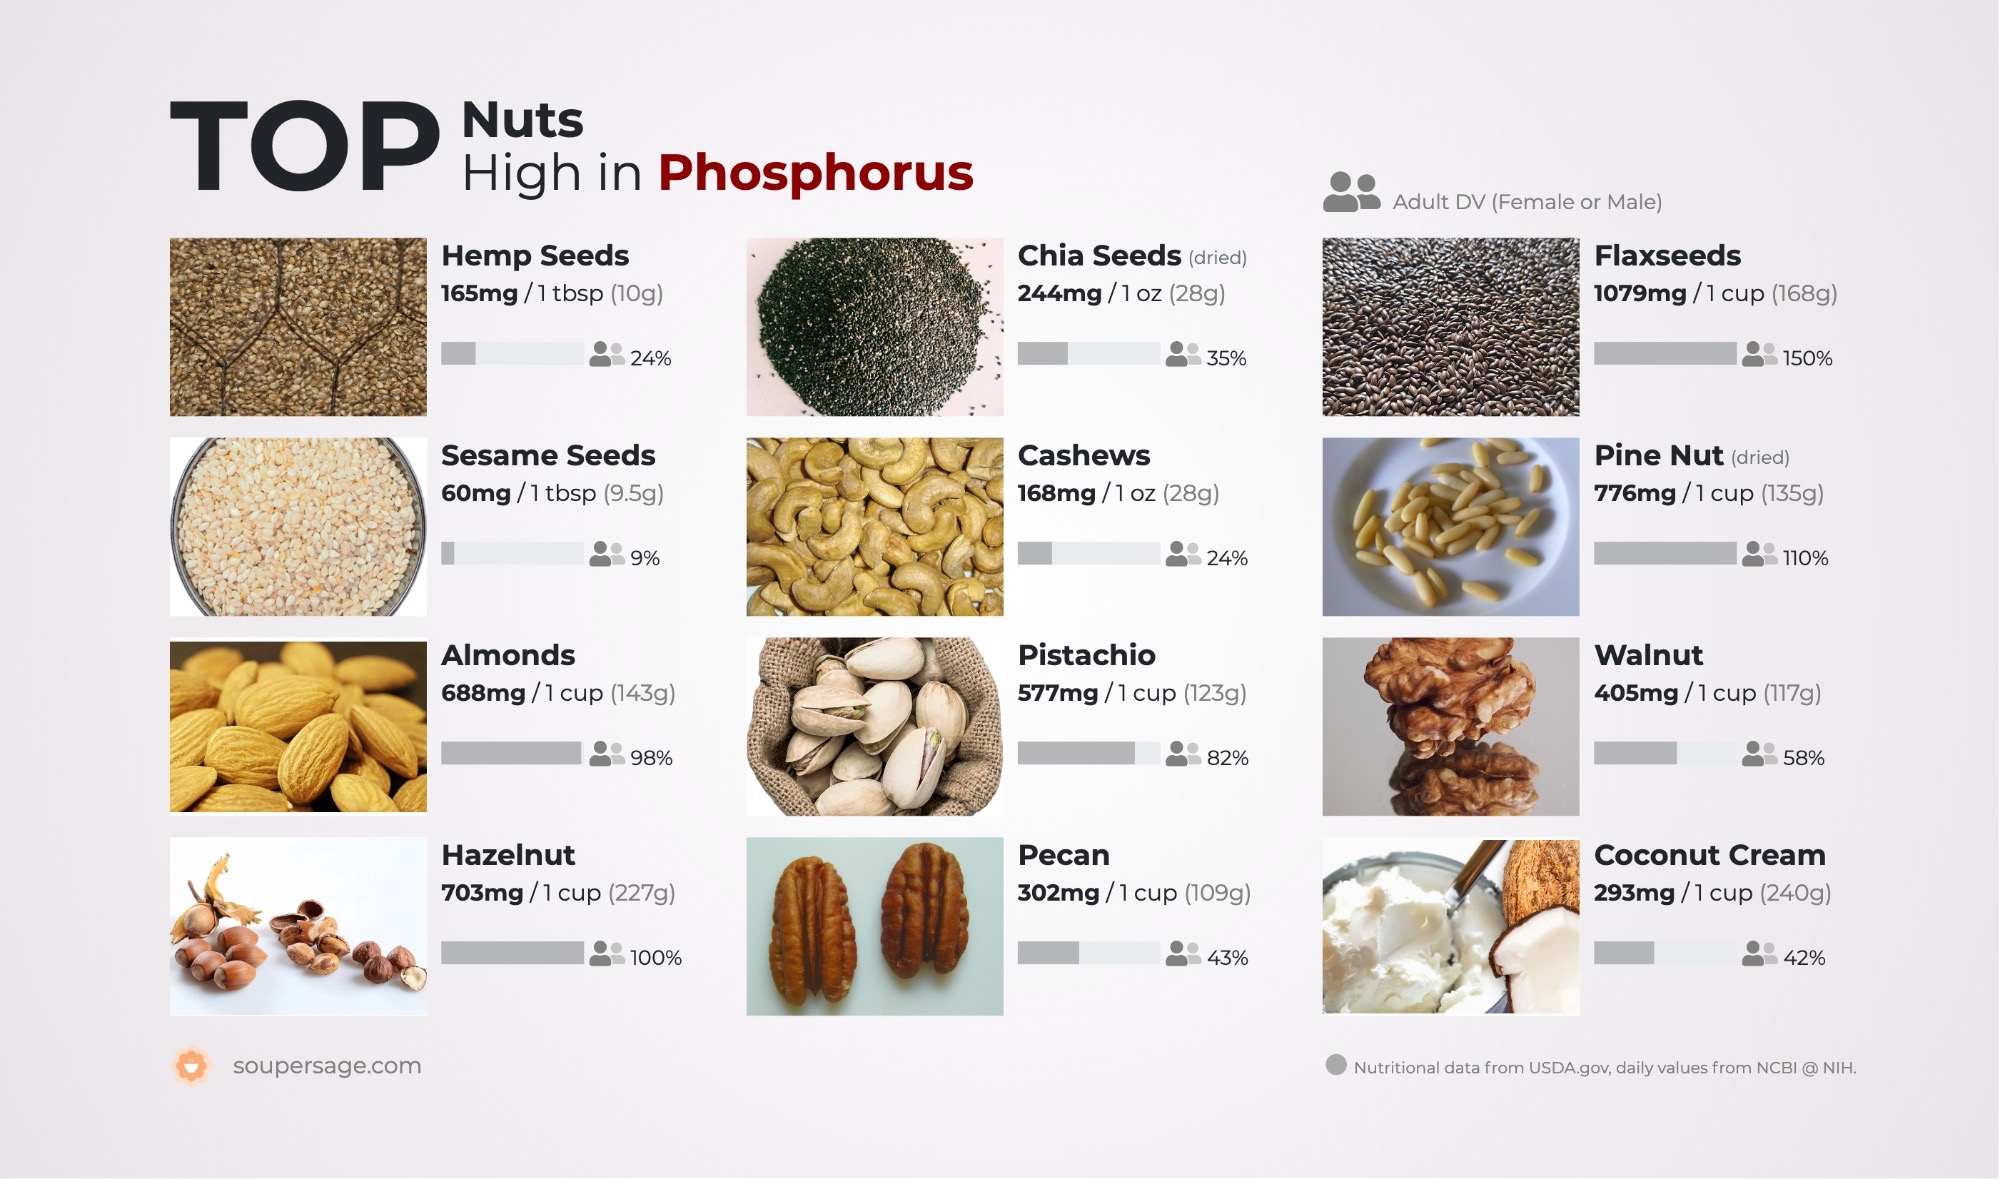 image of Top Nuts High in Phosphorus